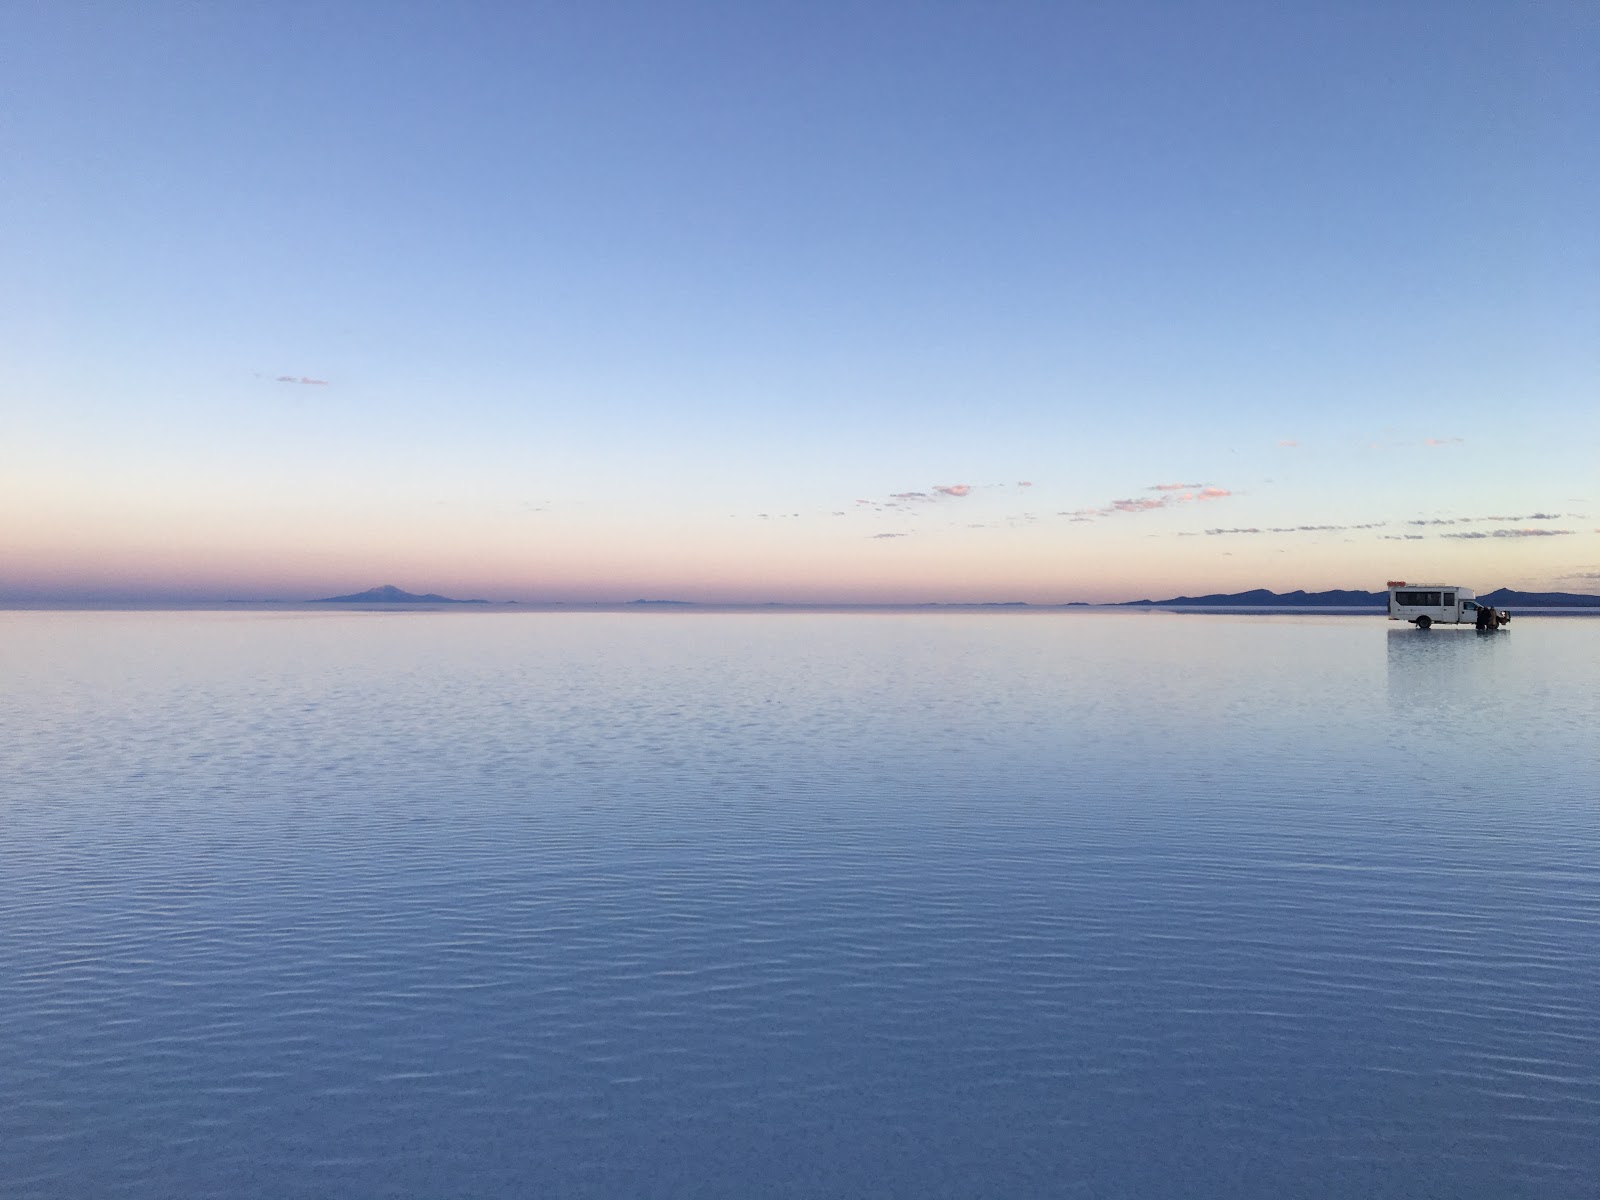 ウユニ塩湖でrx 7を撮る 世界初 Masupape